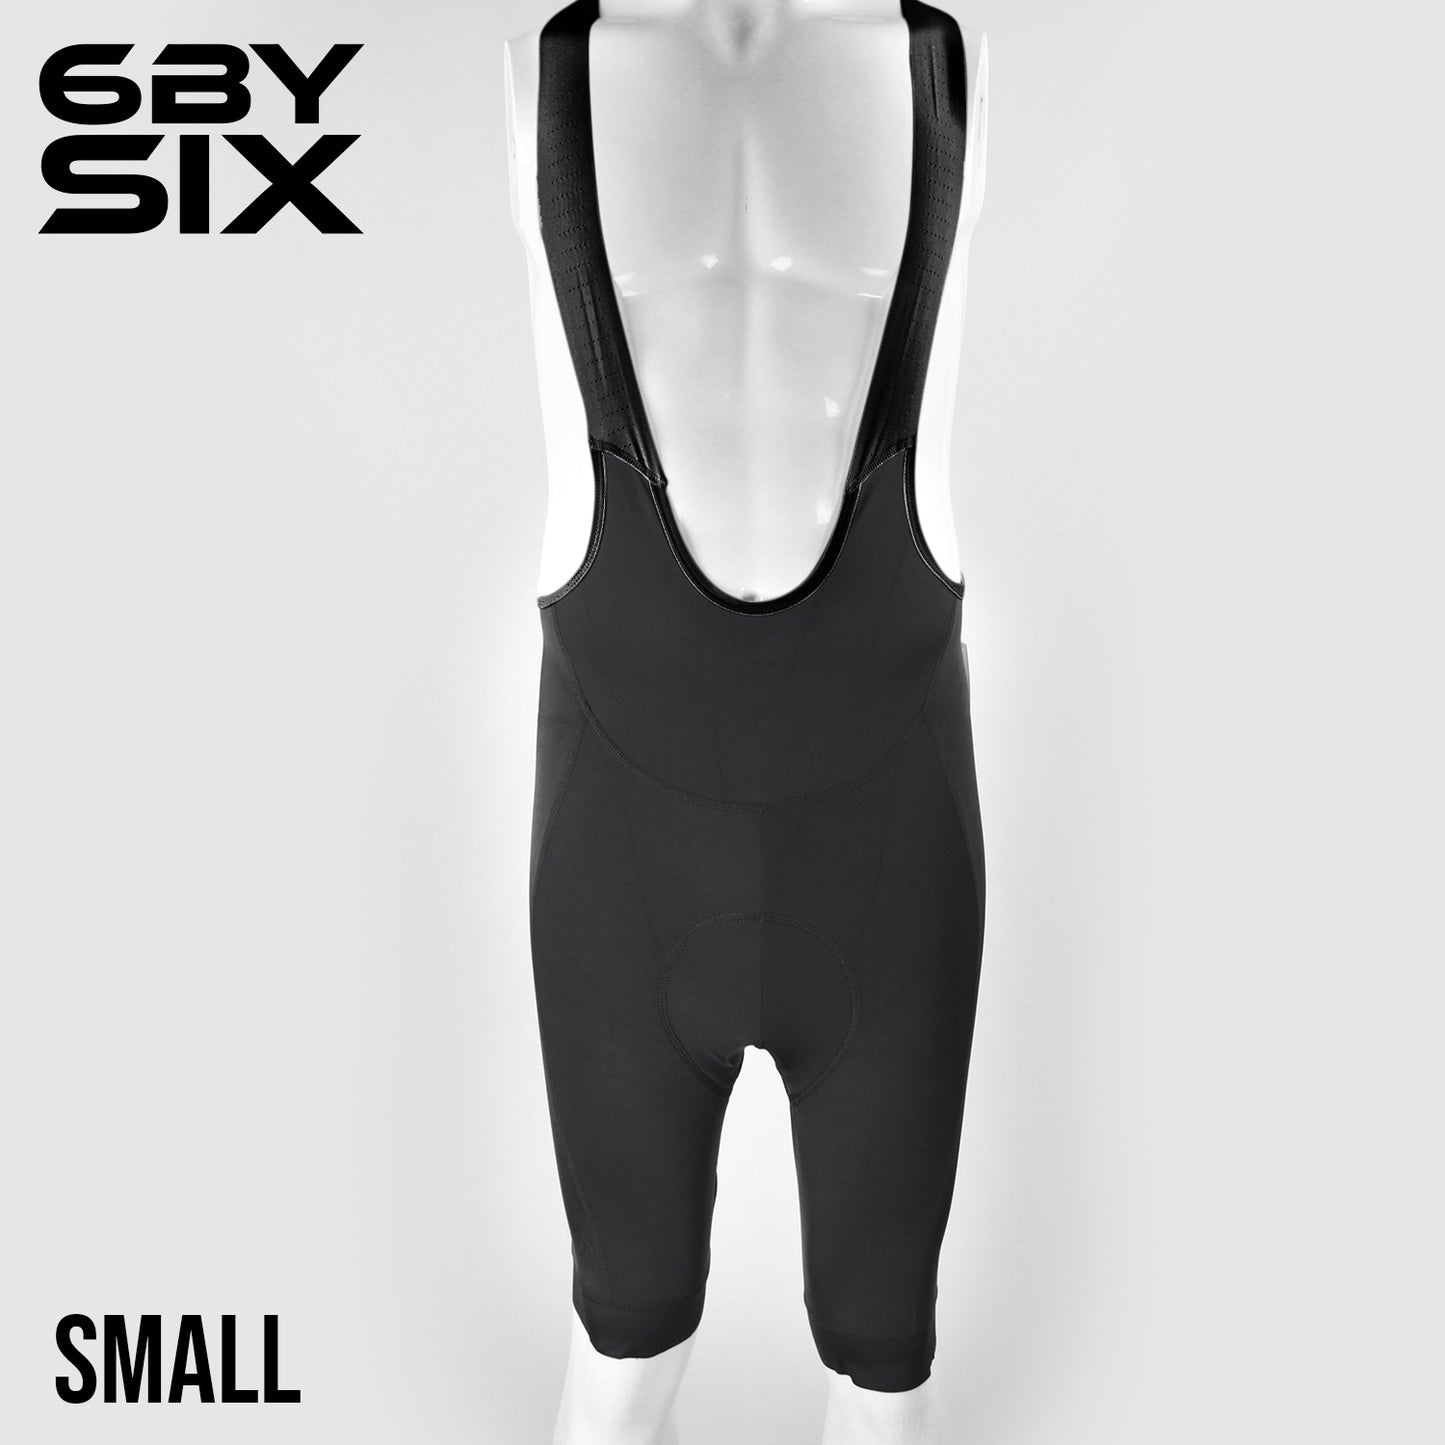 6bySix Adaptive Bib Shorts - Black